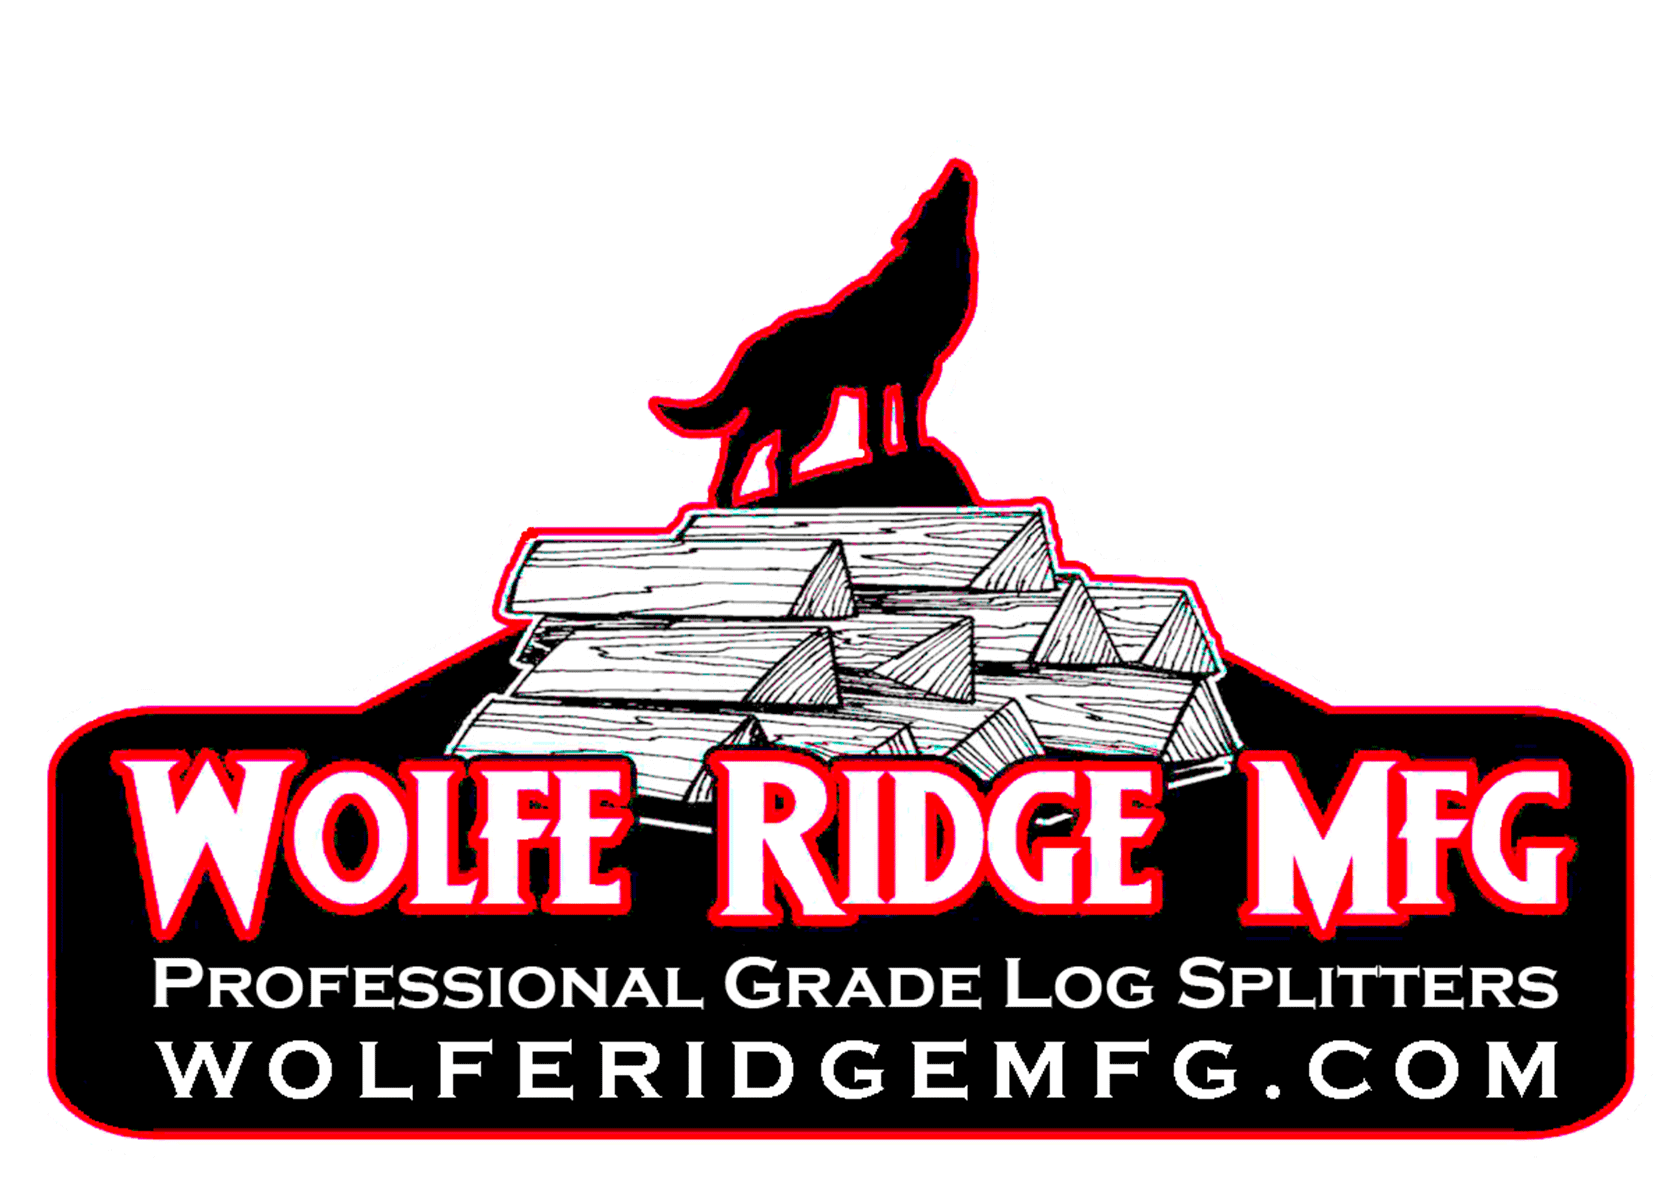 Wolfe Ridge MFG